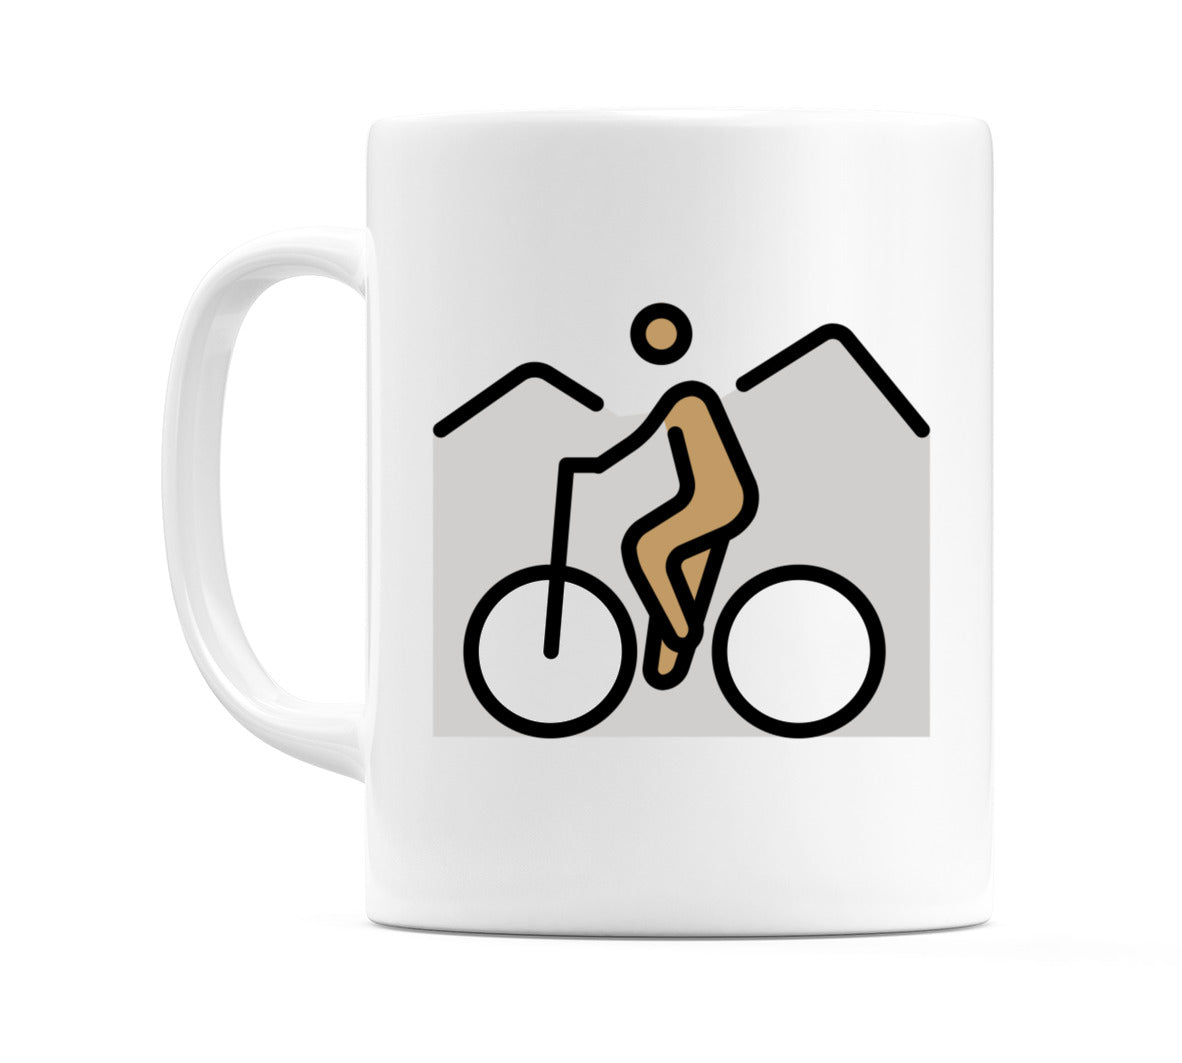 Person Mountain Biking: Medium Skin Tone Emoji Mug